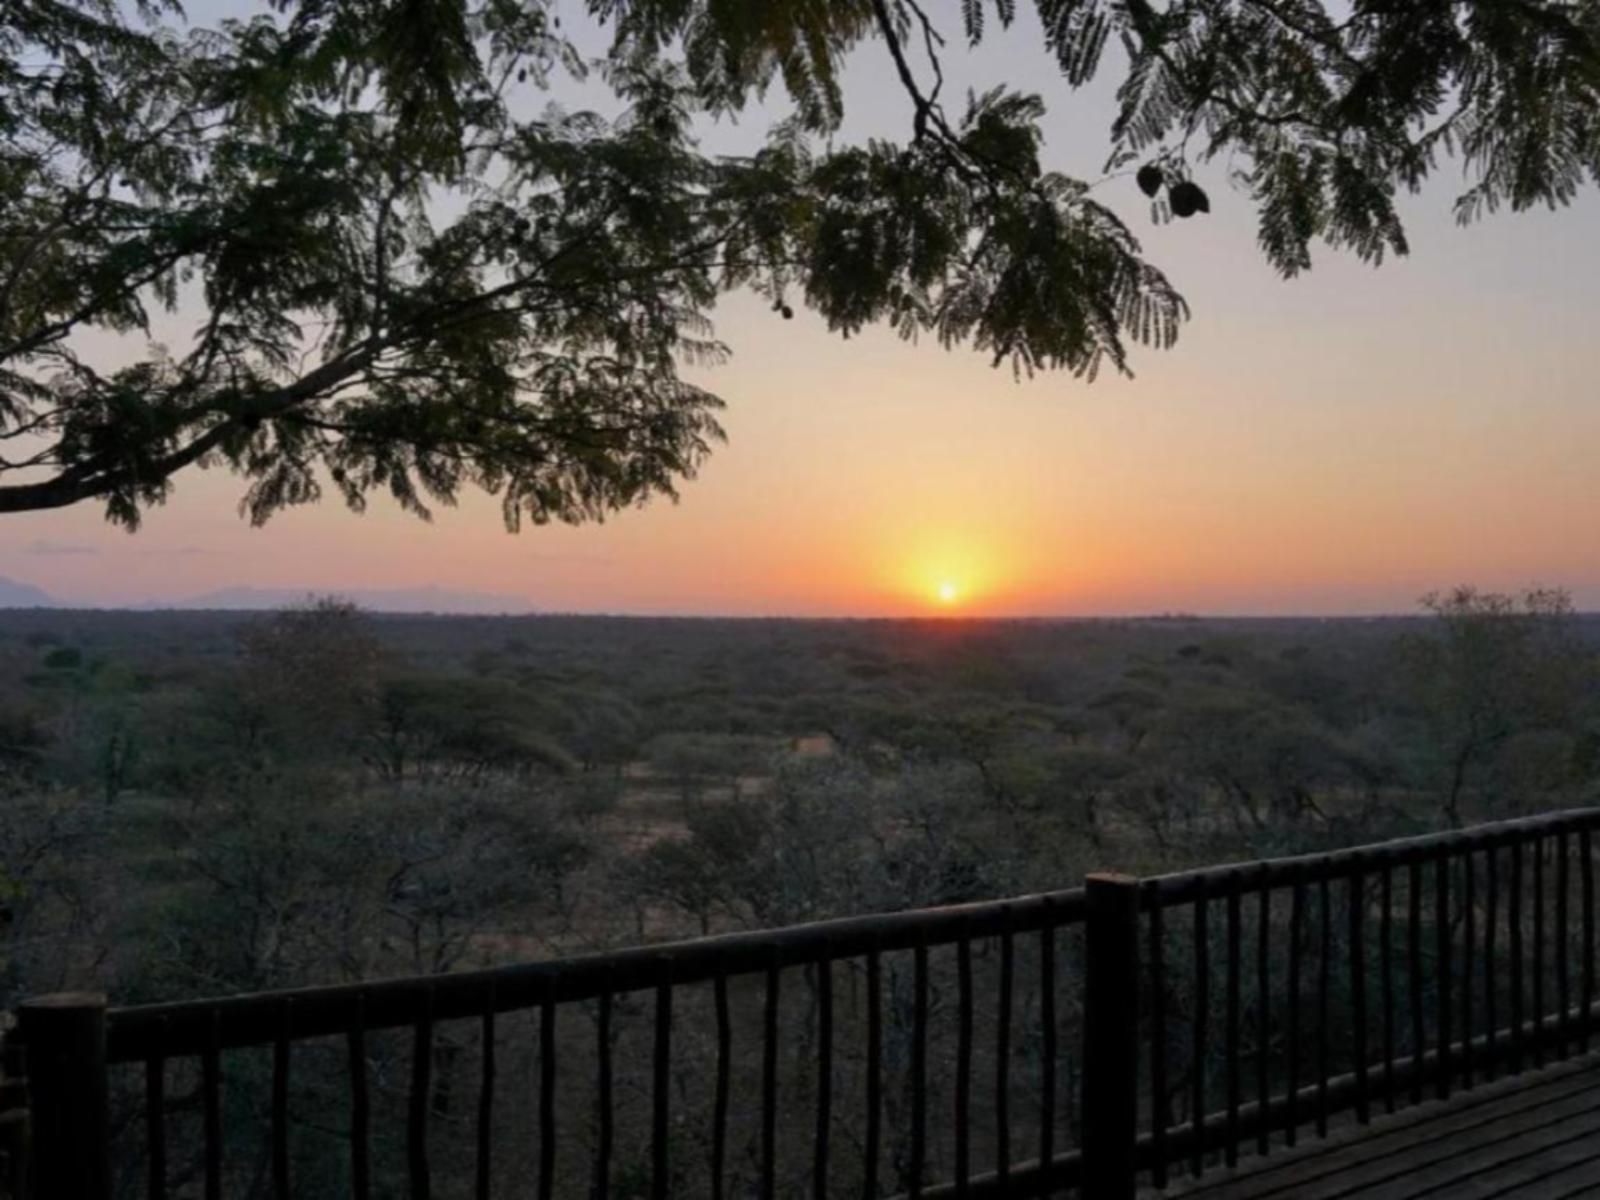 Kum Kula Lodge Kapama Reserve Mpumalanga South Africa Sunset, Nature, Sky